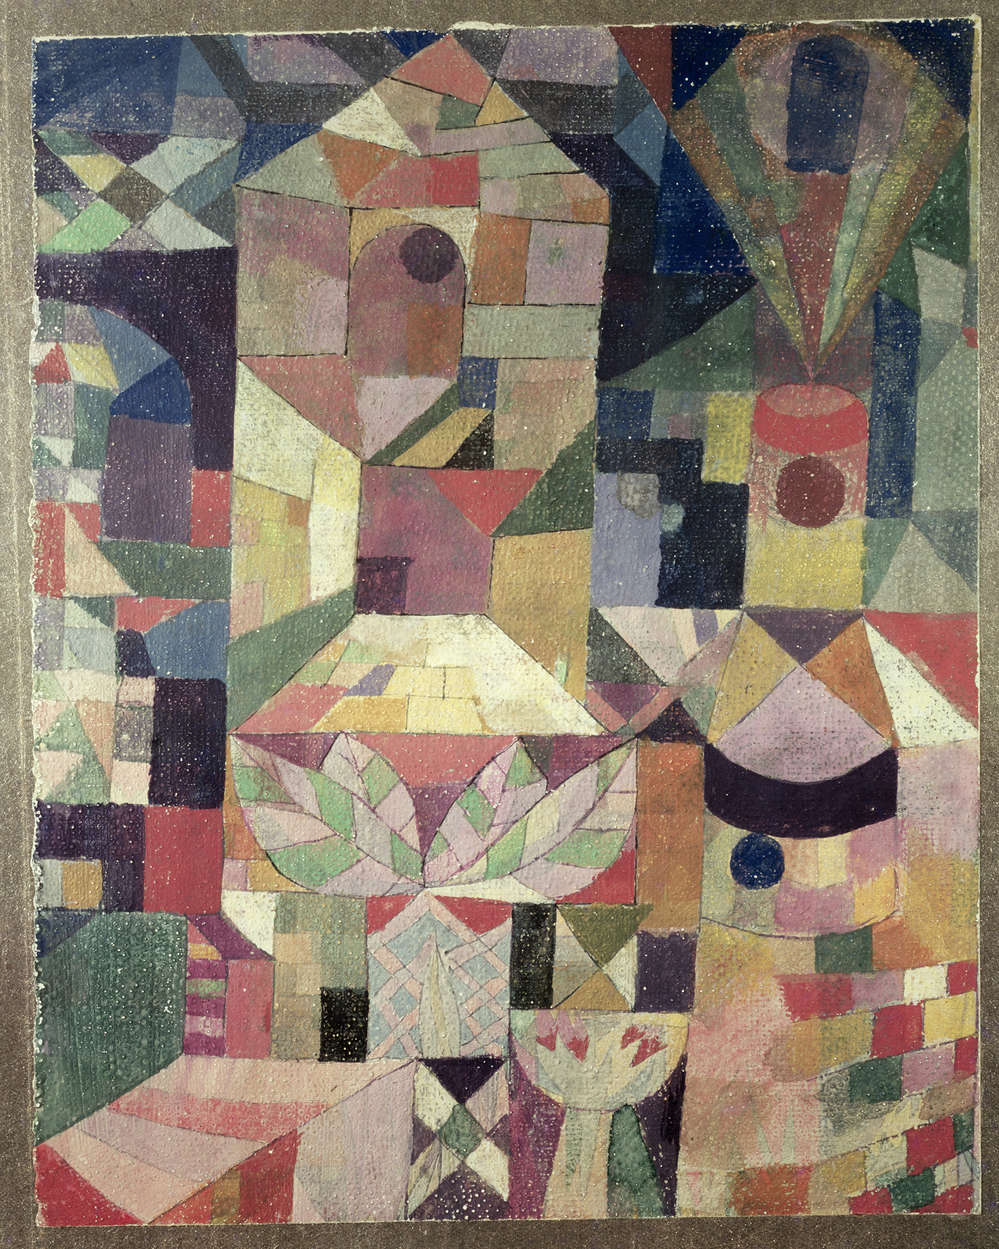             Fotomurali "Il giardino del castello" di Paul Klee
        